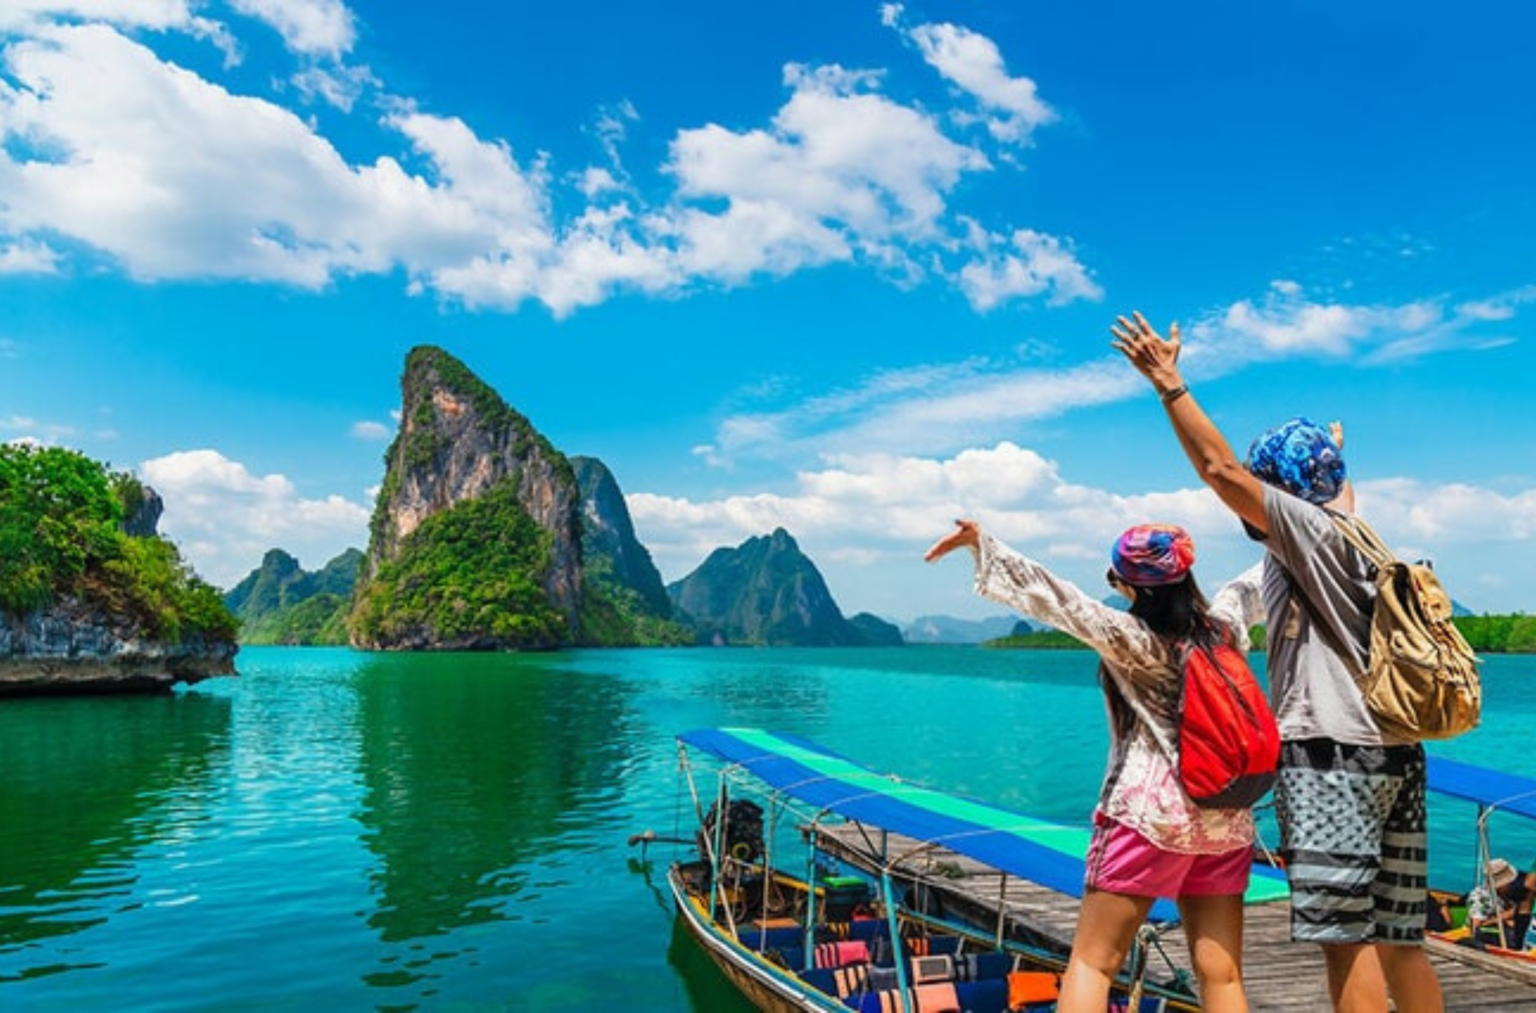 Les lieux de voyage incontournables au Vietnam